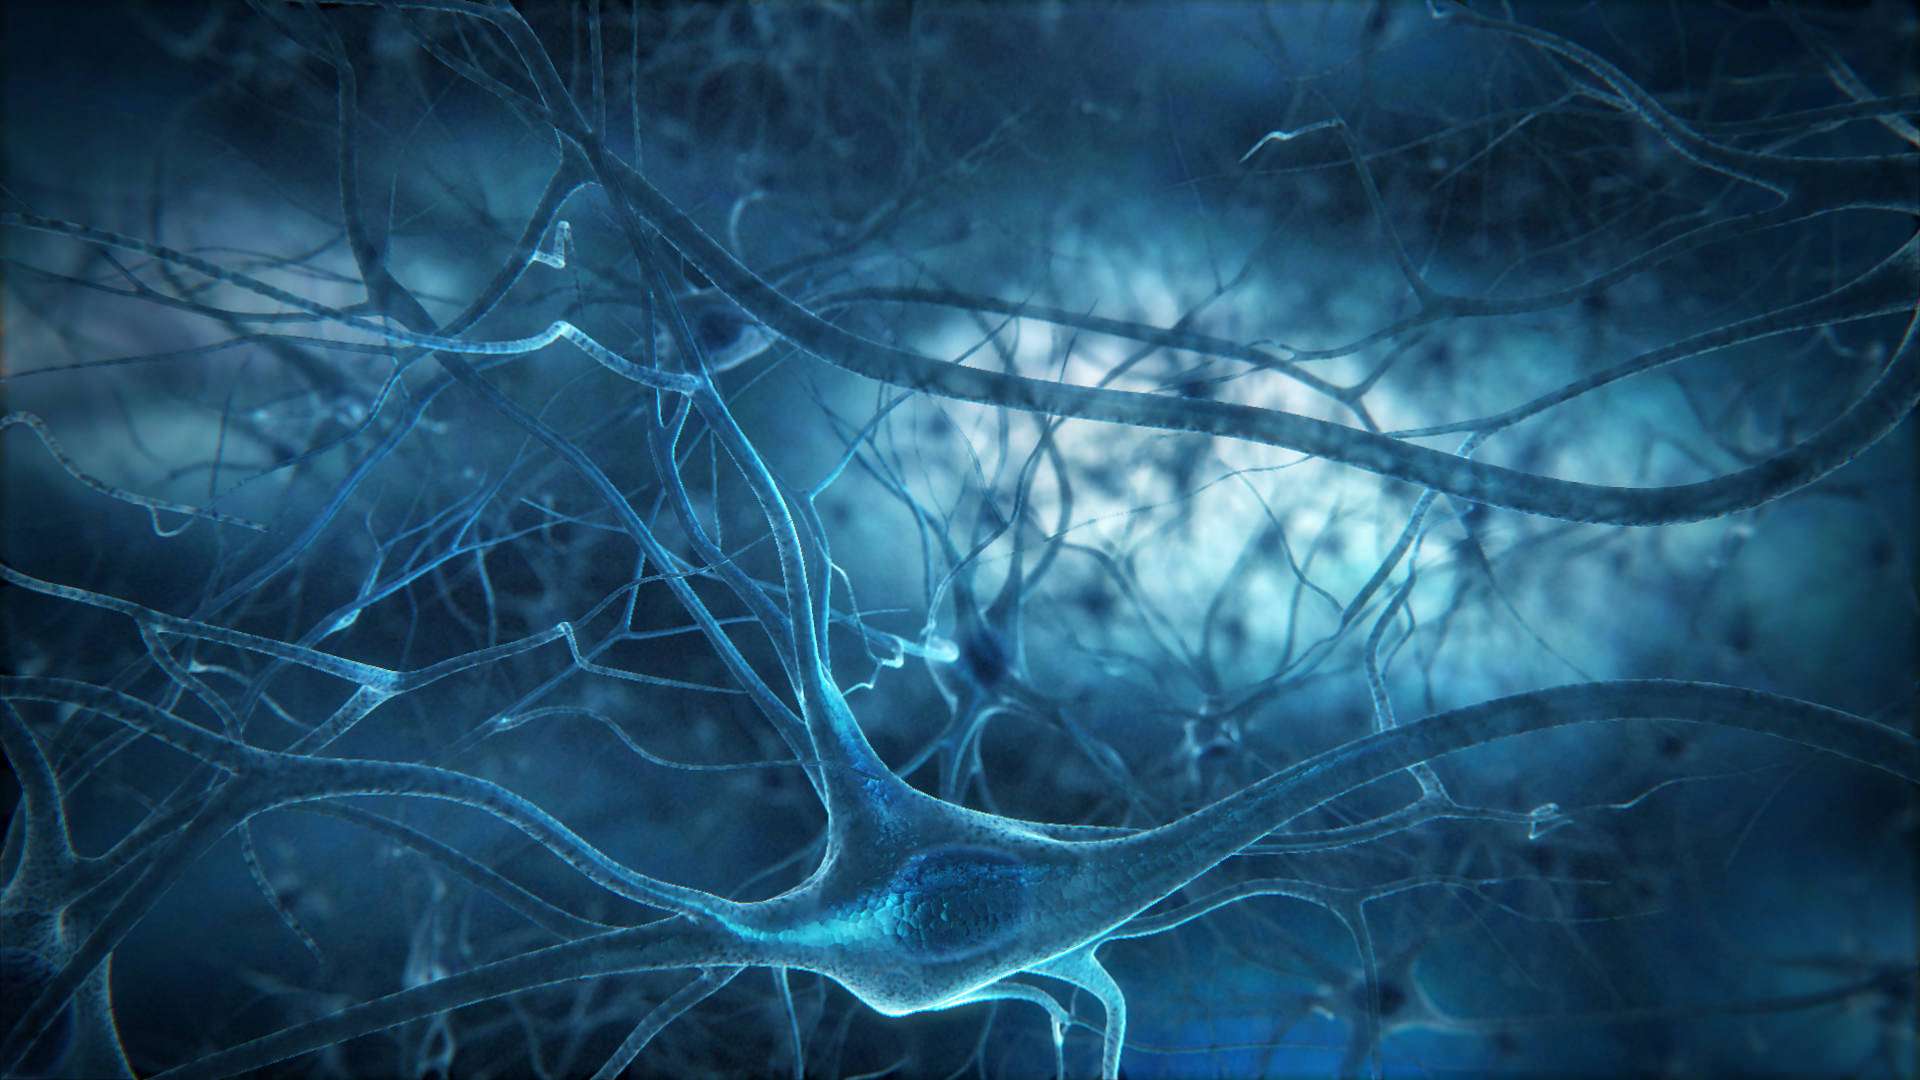 Beyin Hücrelerimiz Hakkında 100 Yıllık Gerçek Tarih Oldu! Webtekno